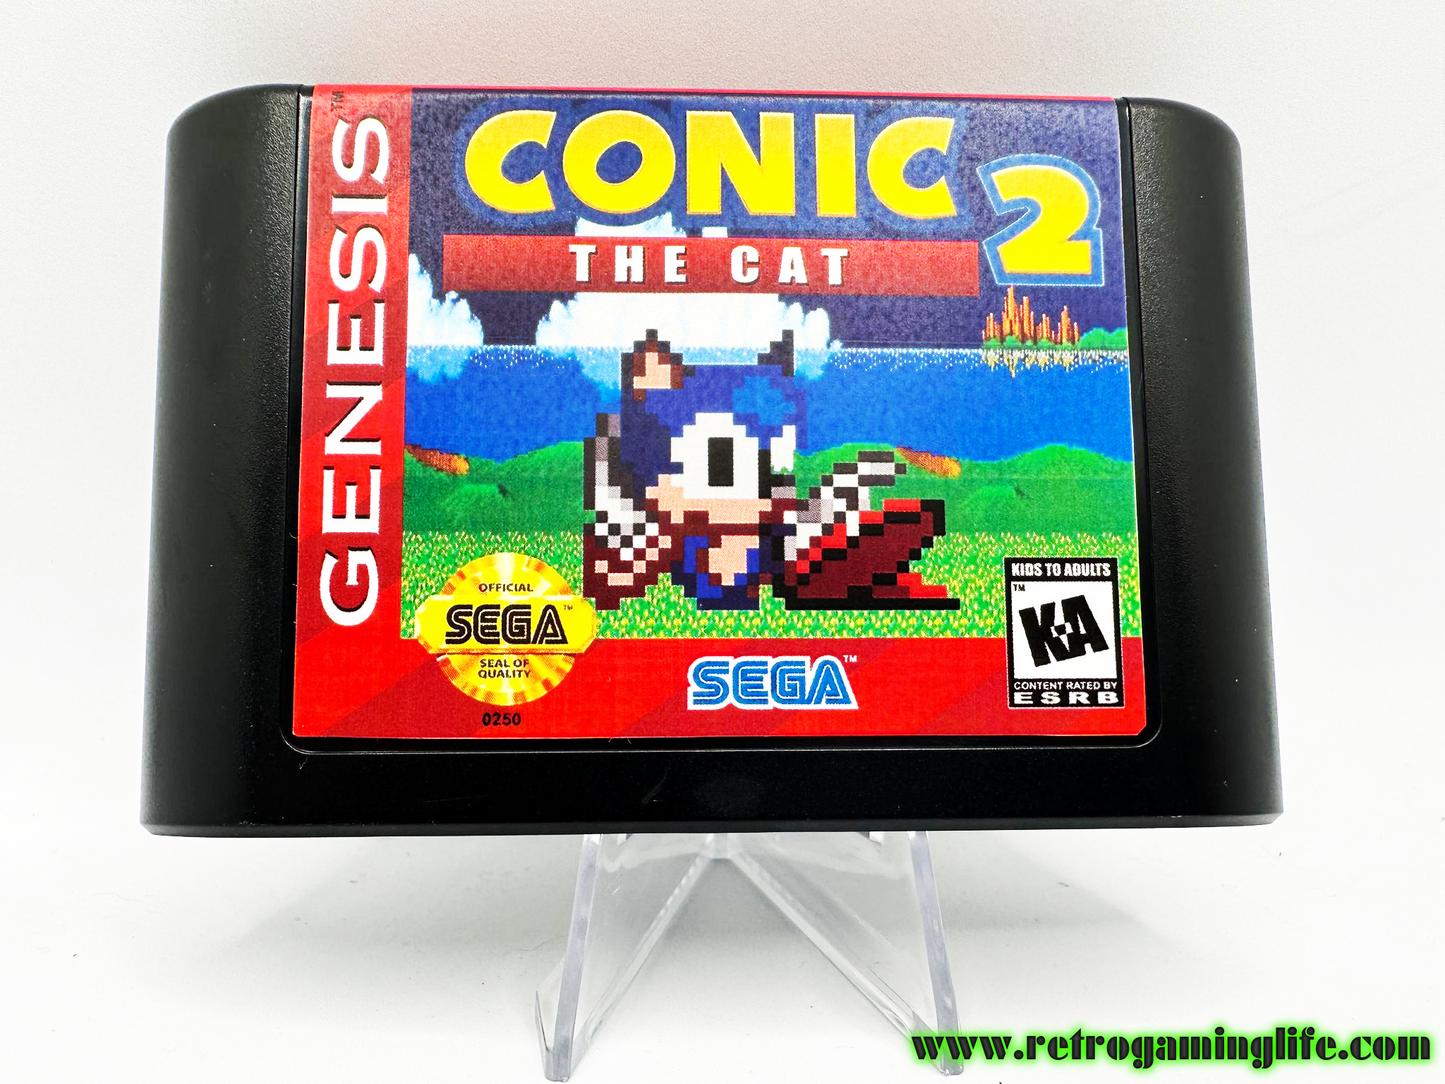 Conic the Cat 2 Sega Genesis Repro Game Cart